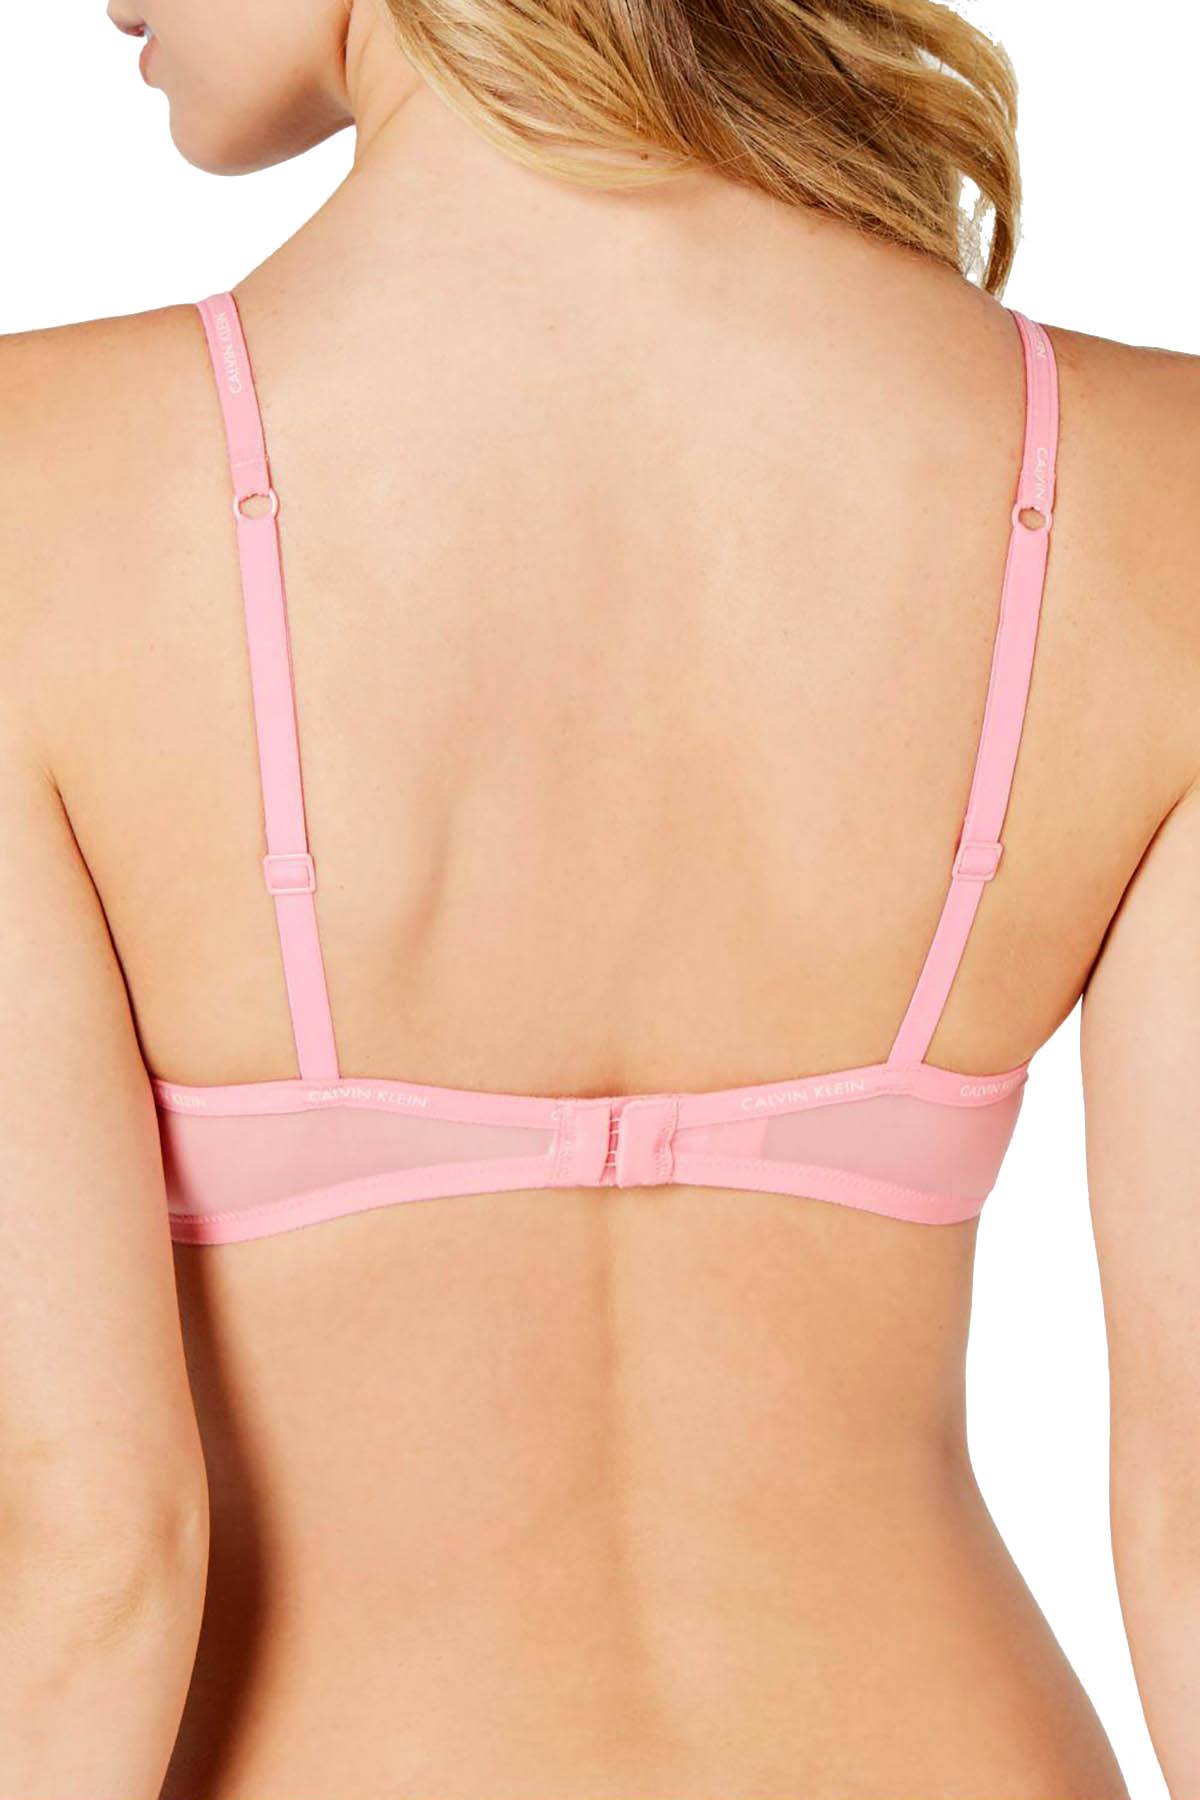 Sheer marquisette bra, pink, Calvin Klein Underwear